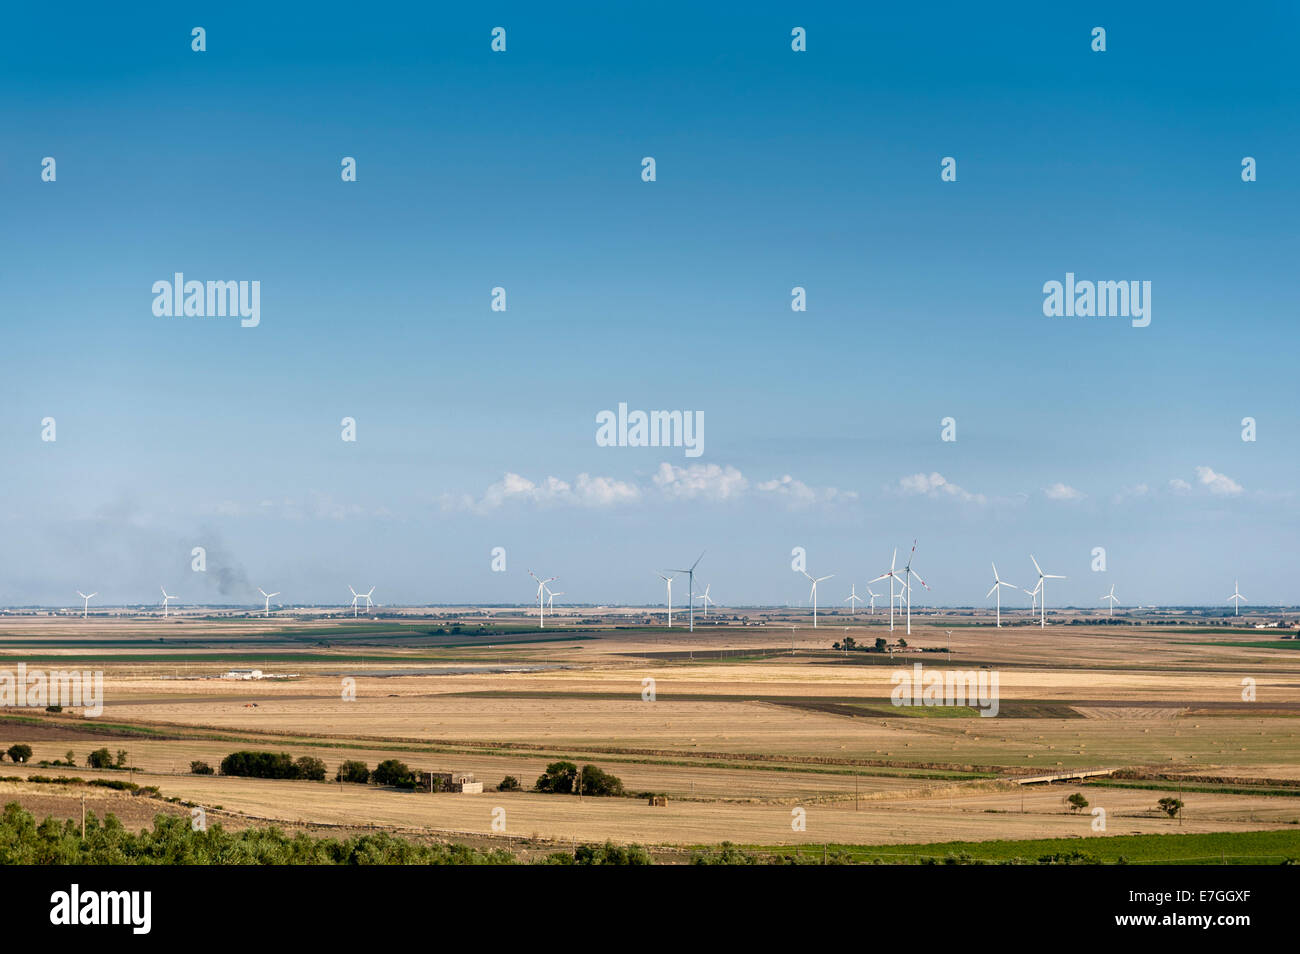 Paesaggio con wind farm con i generatori di energia Foto Stock